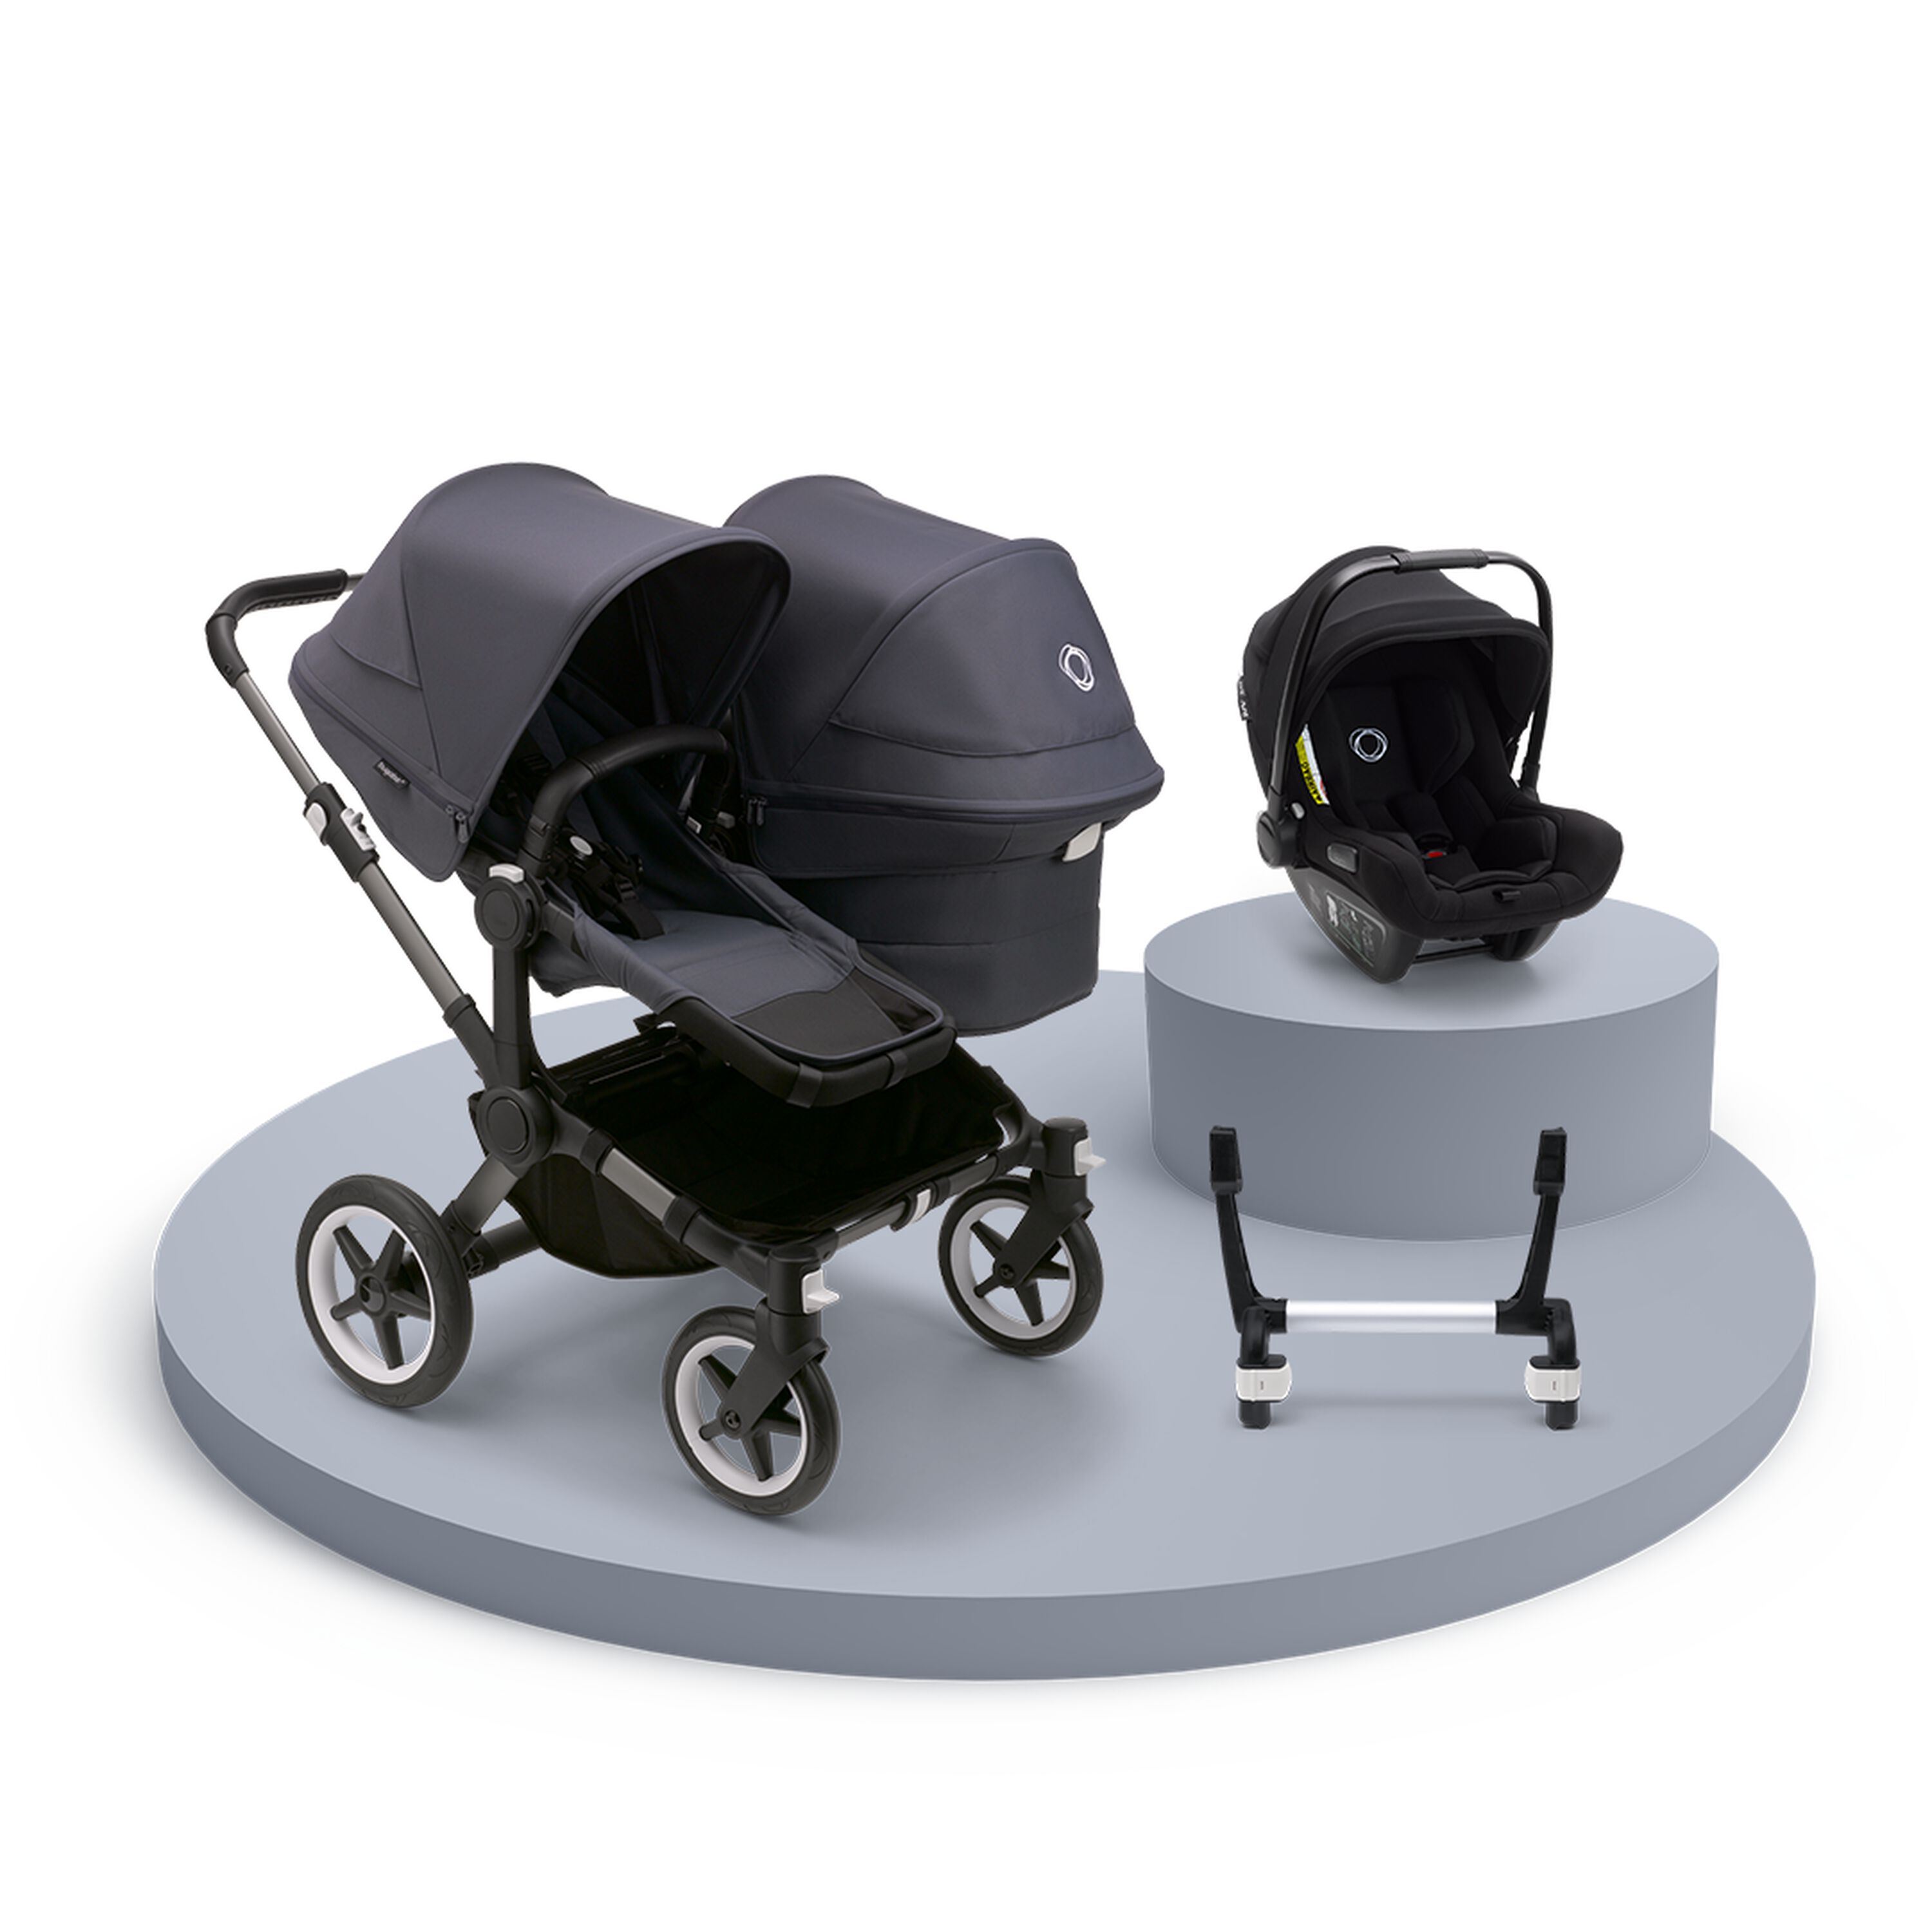 Poussette 3 en 1 set siège auto pour bébé isofix selection Air by